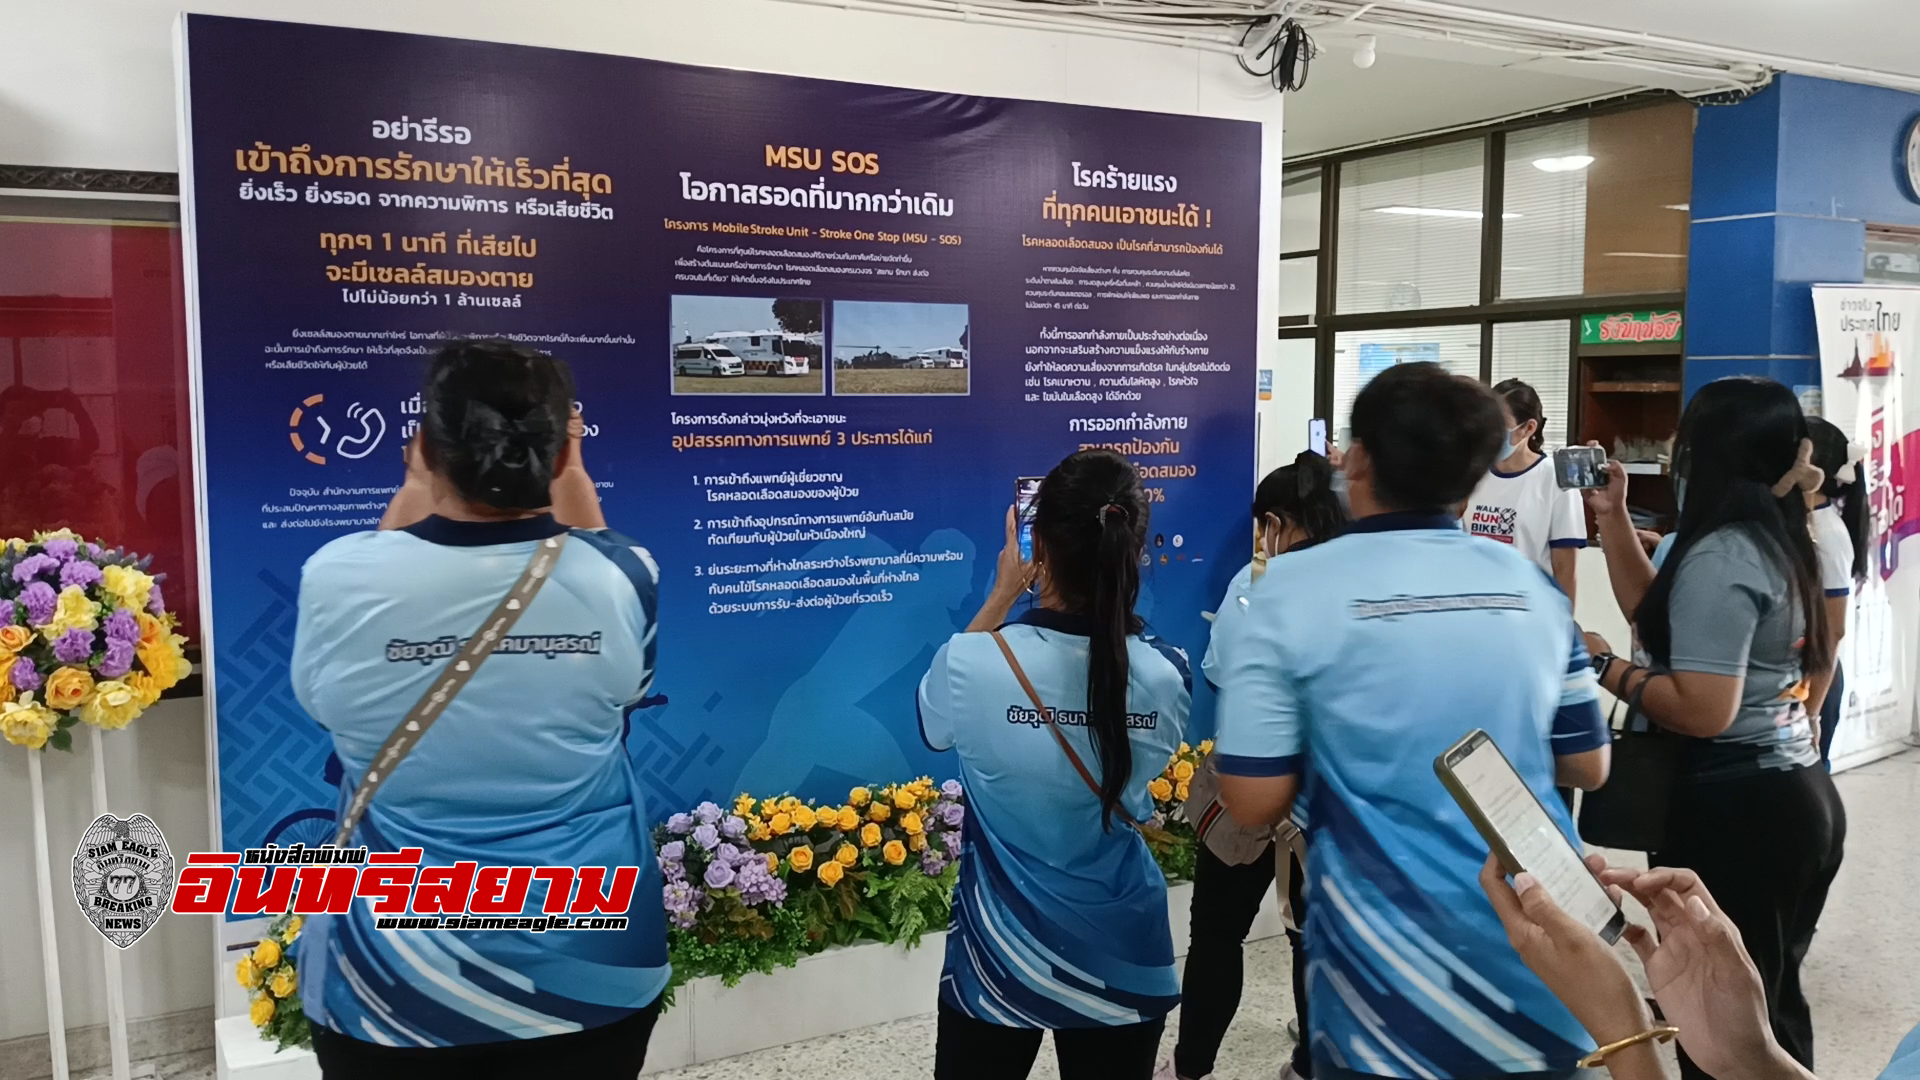 สิงห์บุรี-จัดนิทรรศการแสงนำใจไทยทั้งชาติ เดิน วิ่ง ปั่น ป้องกันอัมพาต ครั้งที่ 8